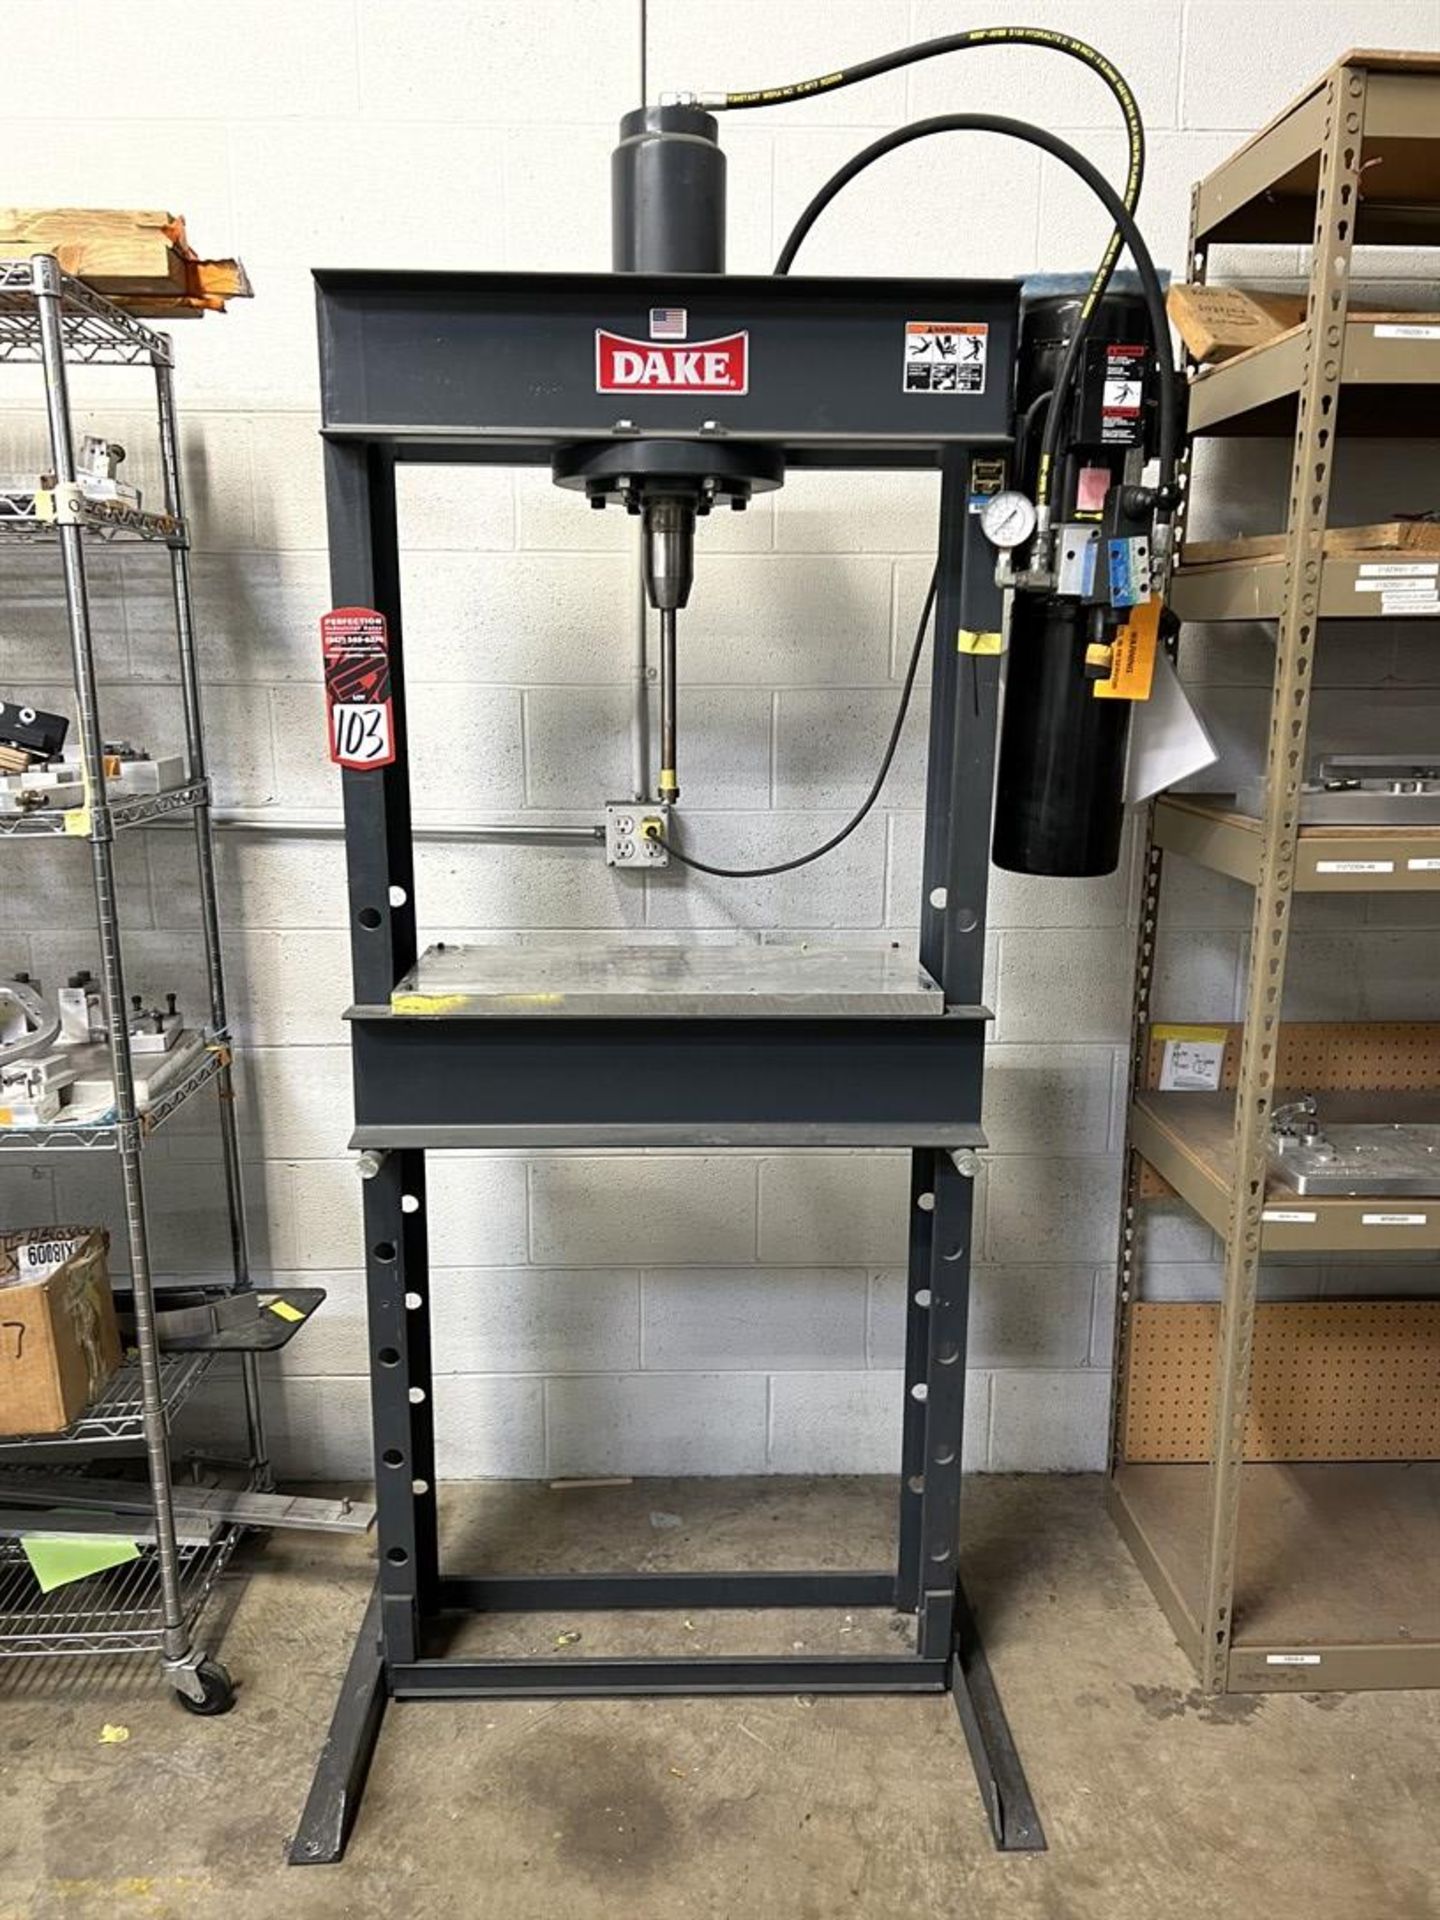 DAKE 909215 25-Ton H-Frame Hydraulic Shop Press, s/n 1178170